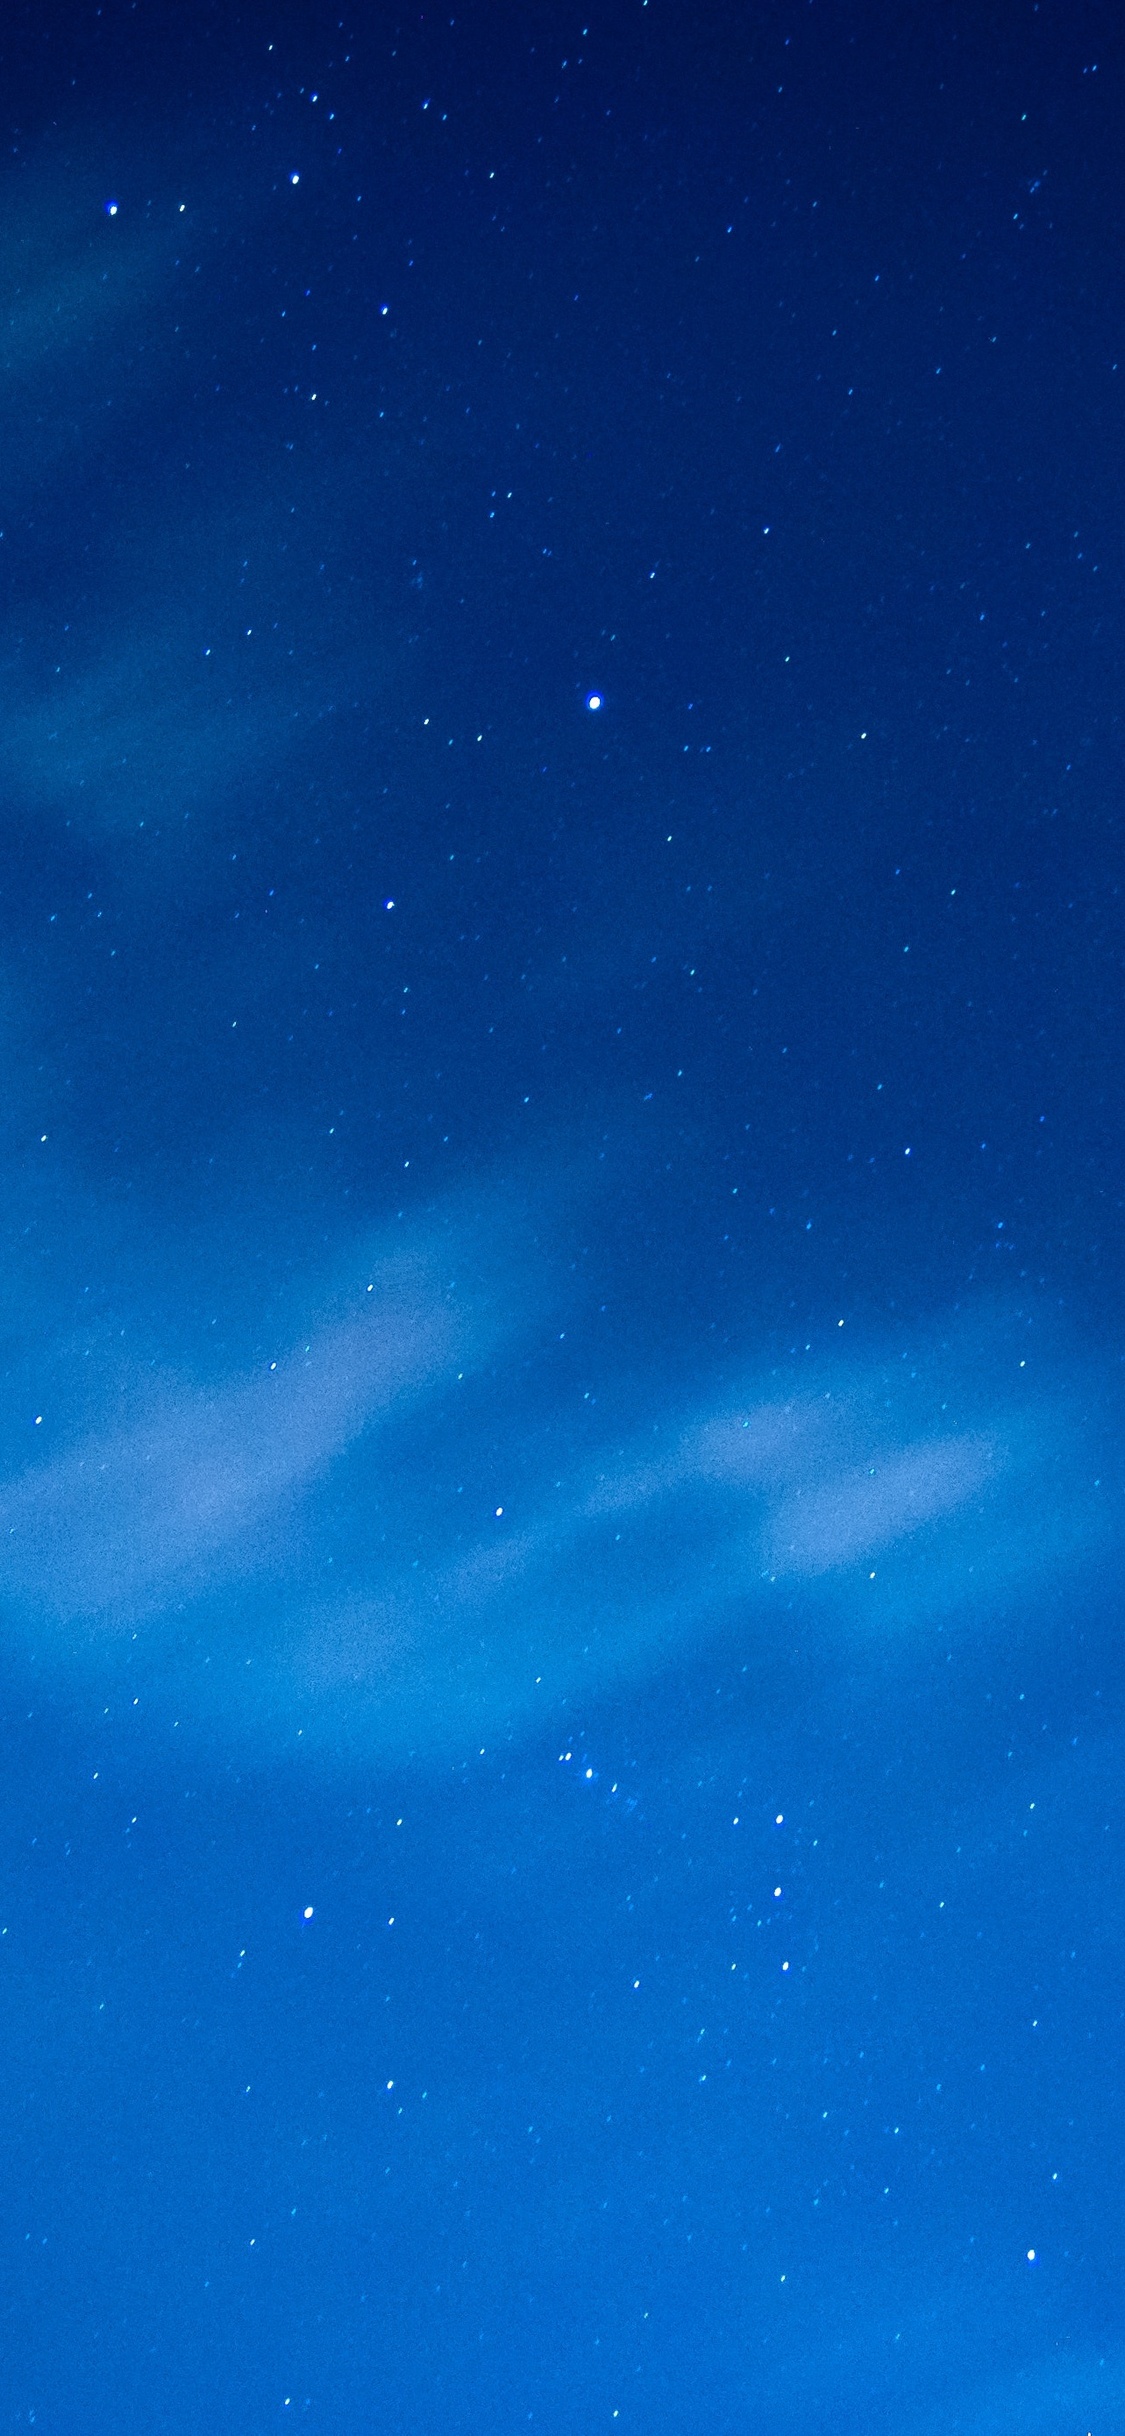 Màn trời xanh dương đầy trăng lung linh đã được biến thành hình nền hoàn hảo cho chiếc iPhone XS của bạn. Cảm nhận vẻ đẹp thanh thoát và tinh tế từng chi tiết trên chiếc iPhone của bạn với những hình nền tuyệt đẹp này. Hãy tải về ngay và trải nghiệm ngay hôm nay.